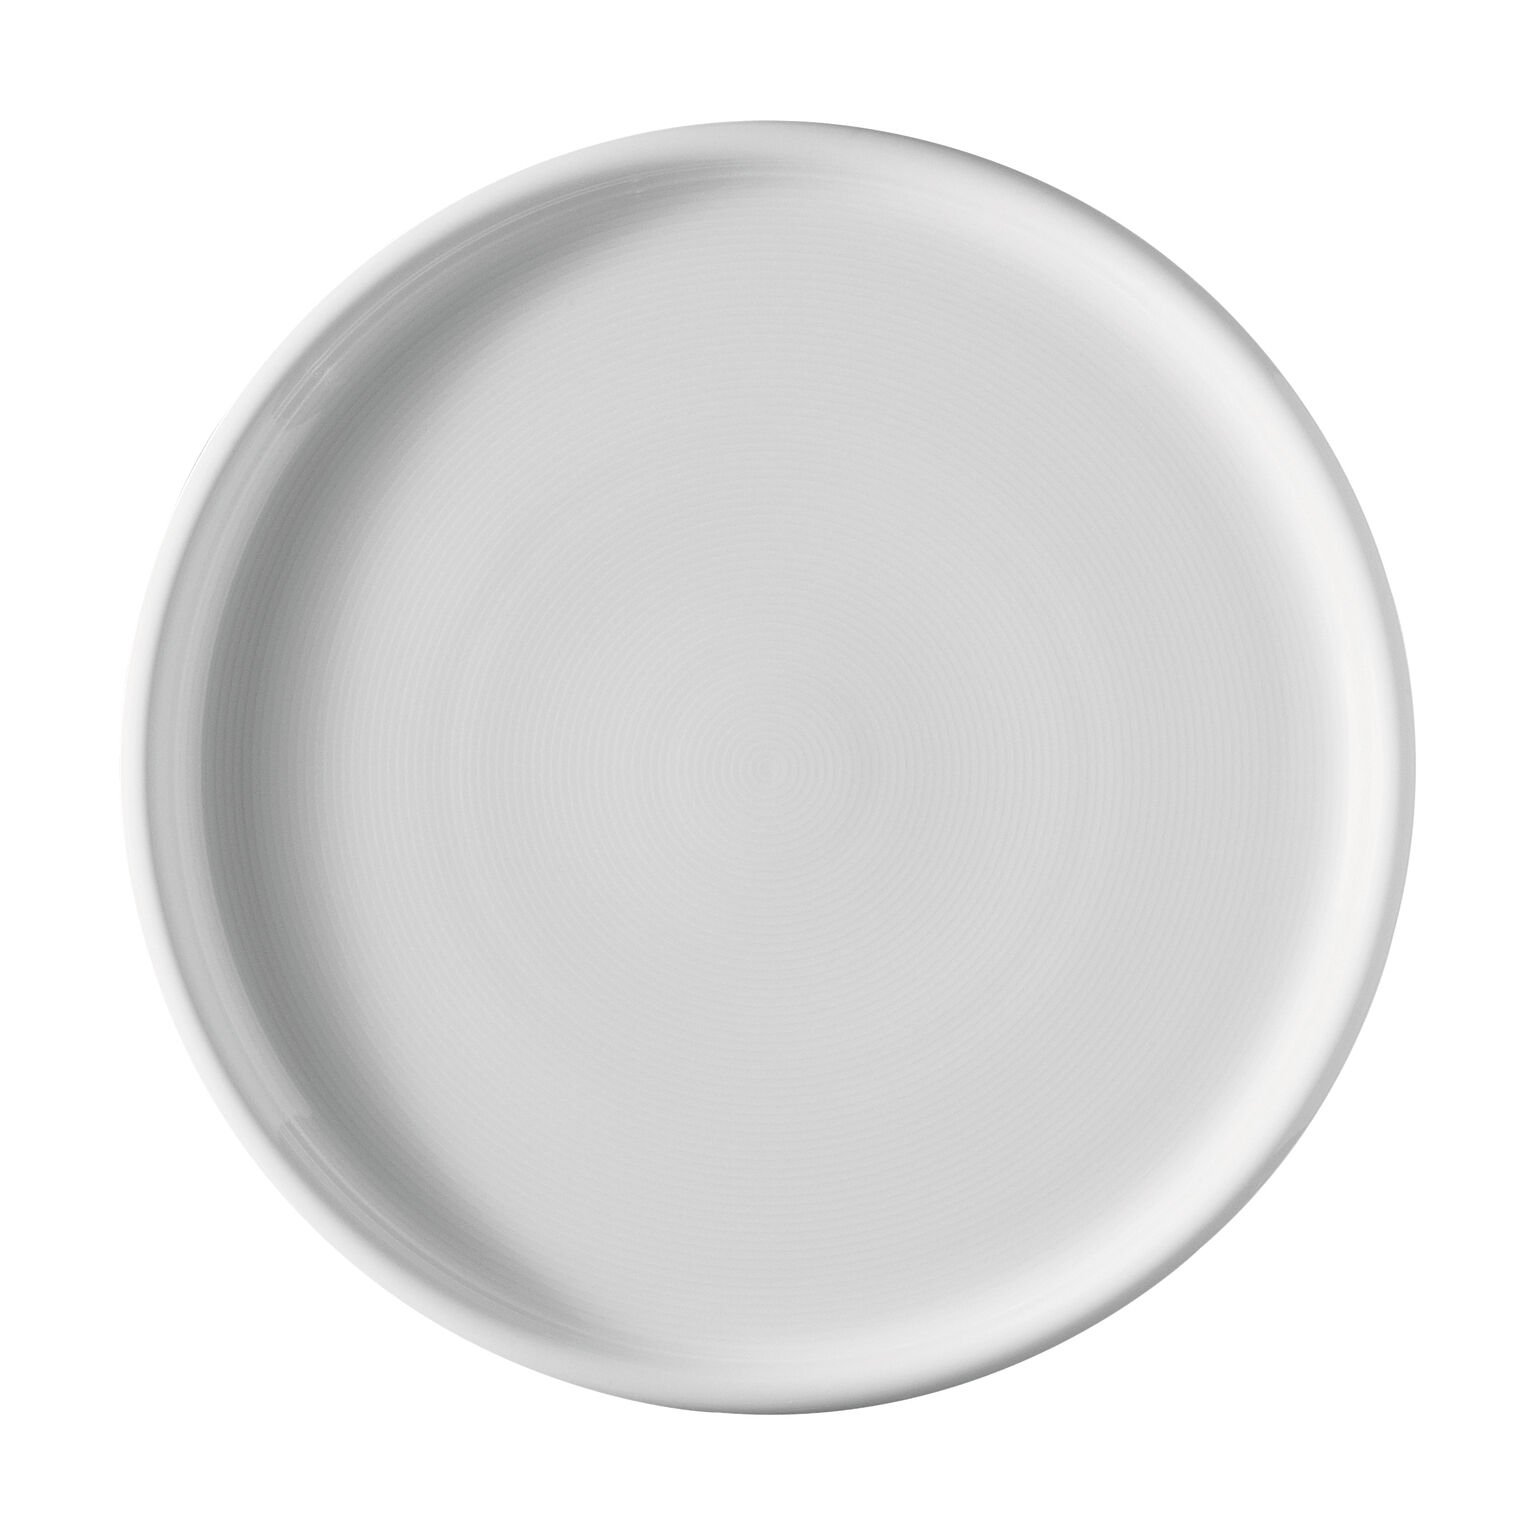 32cm diameter WHITE DINNER PLATE 